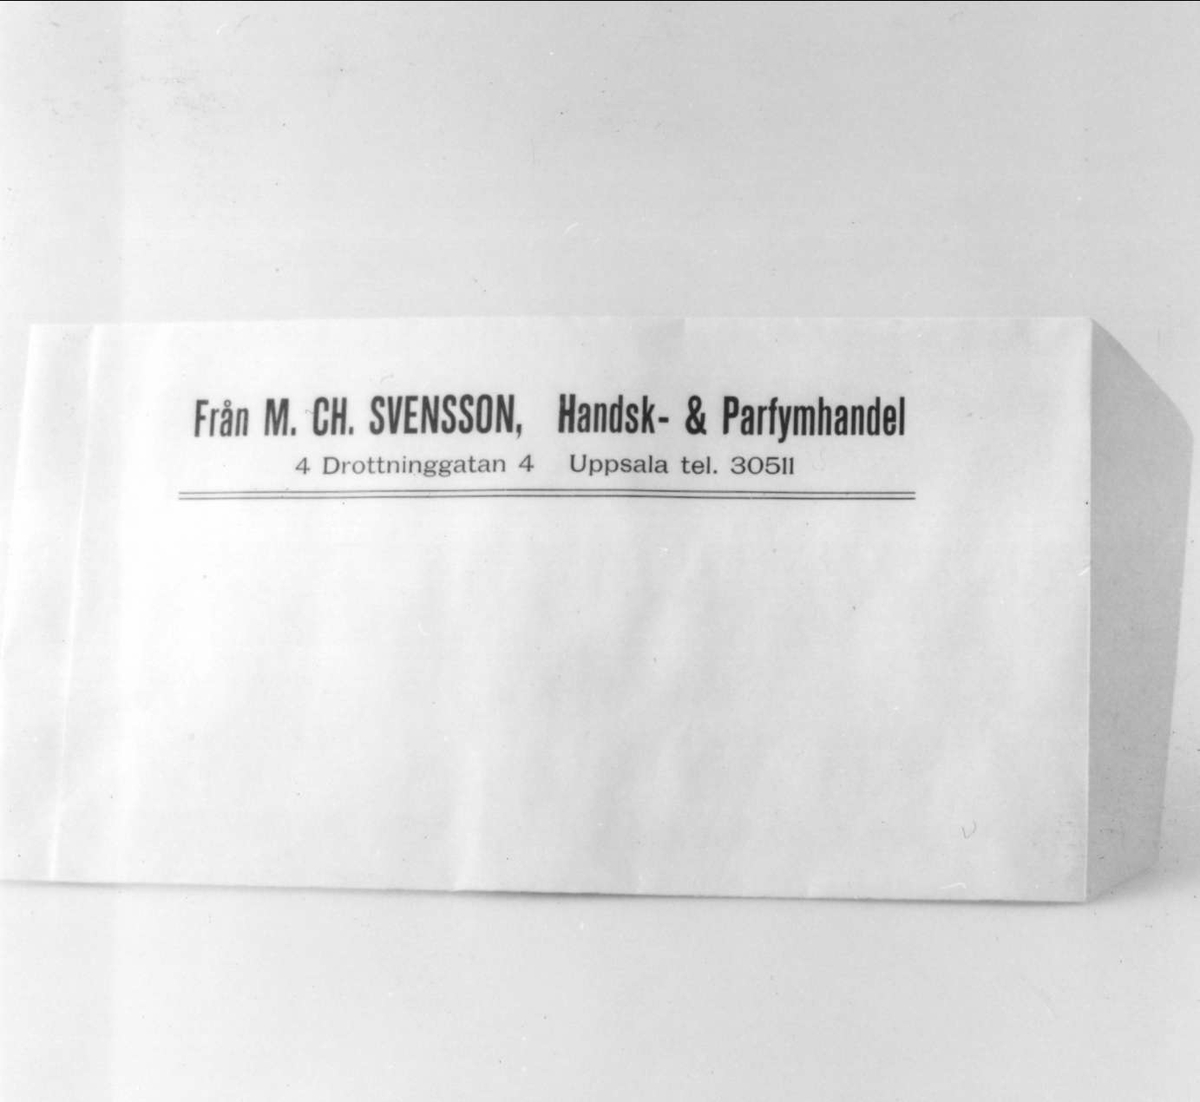 Påse av beige-rosa papper med tryckt blå text "Från M Ch. Svensson, Handsk & Parfymhandel, 4 Drottninggatan 4, Uppsala, tel. 305 11".

